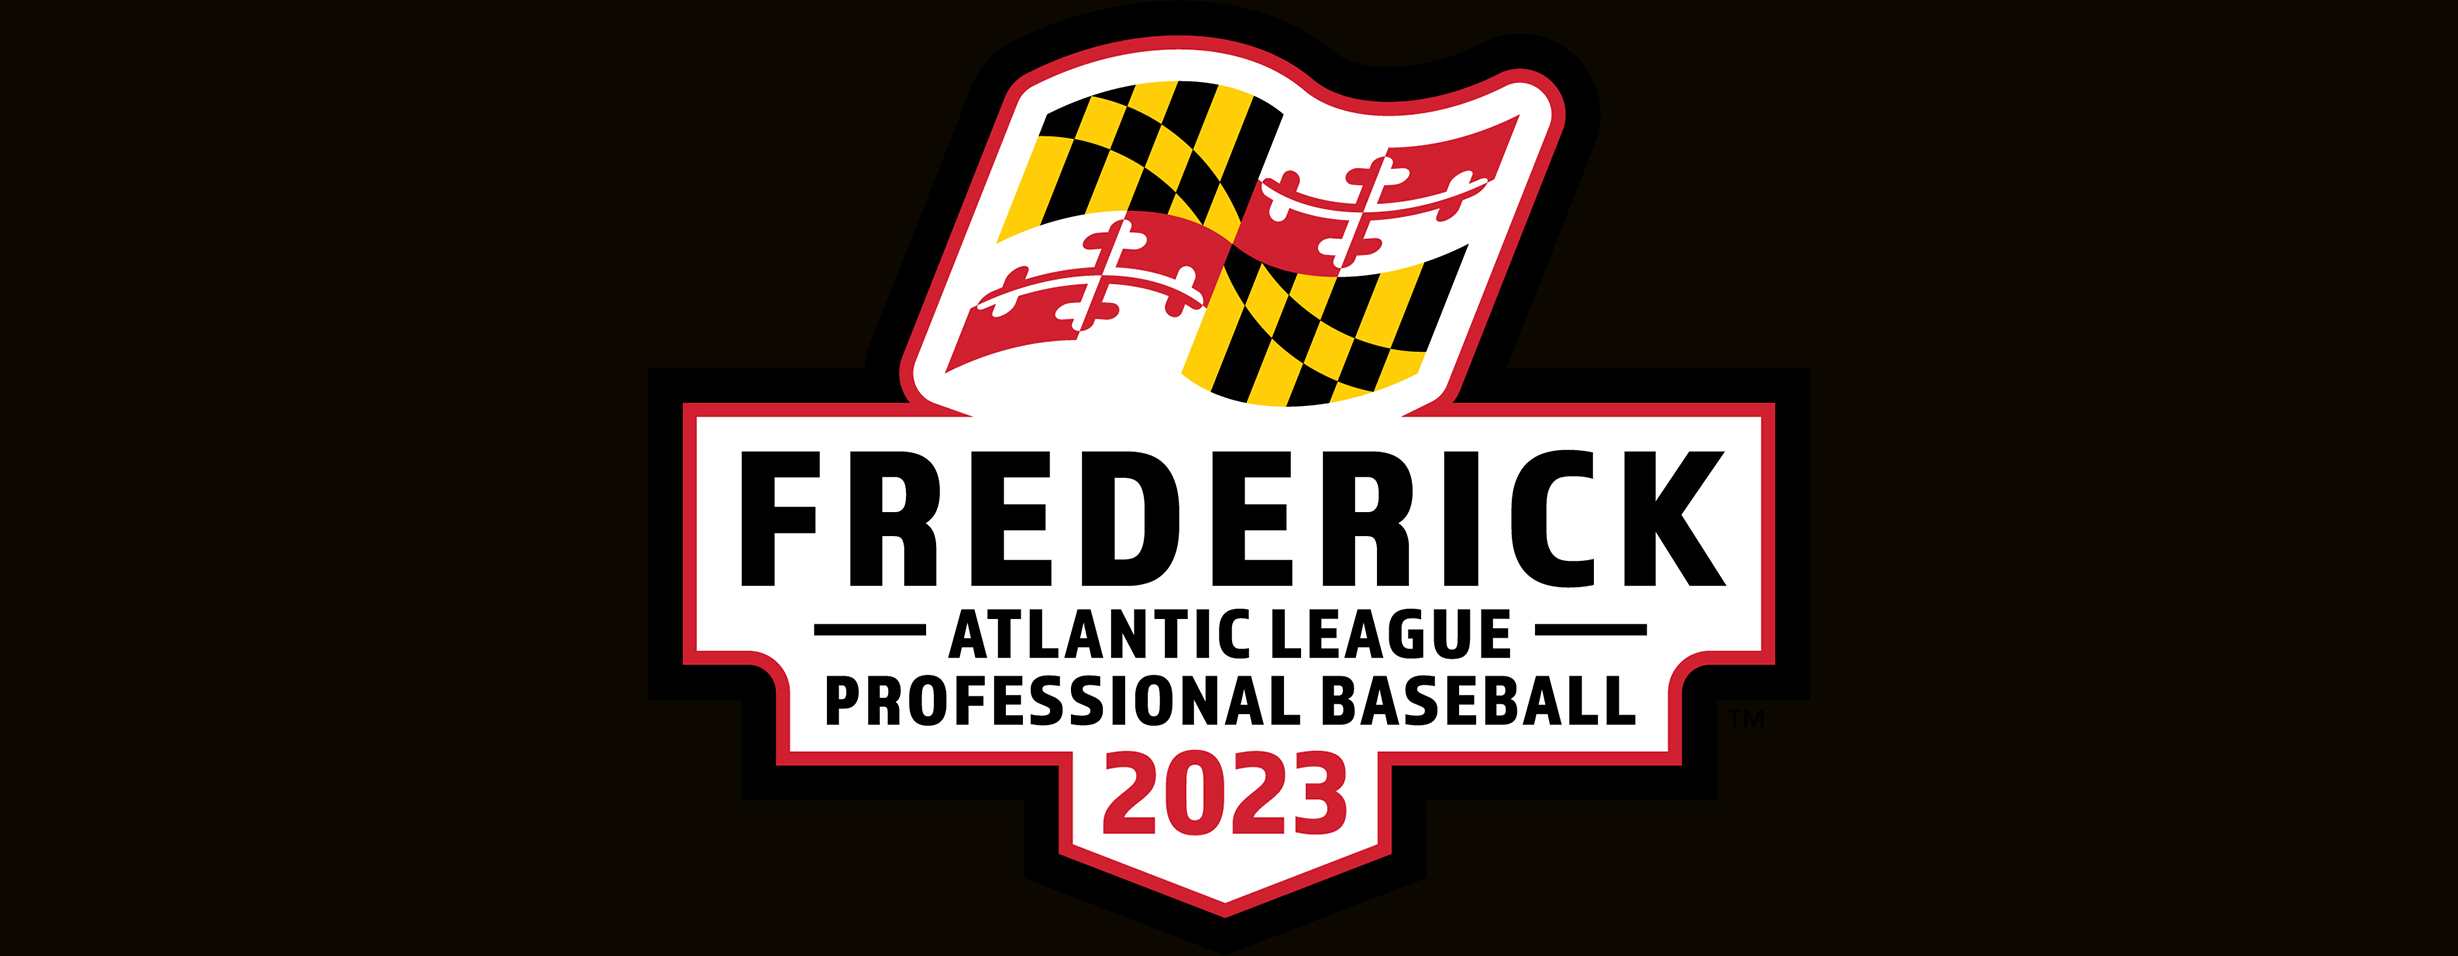 Atlantic League Professional Baseball: Around the League